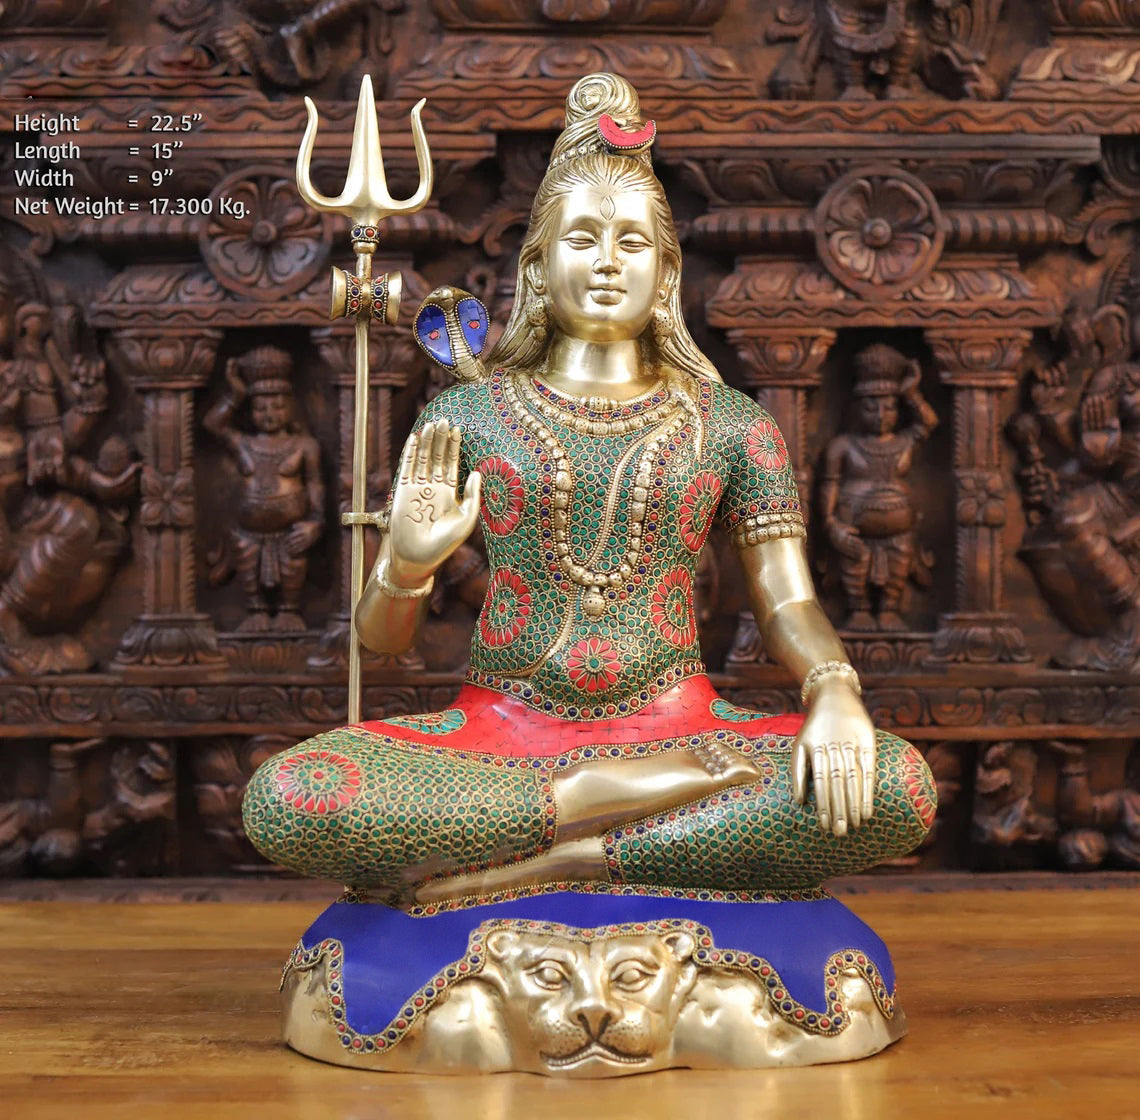 22.5" Mahadev statue